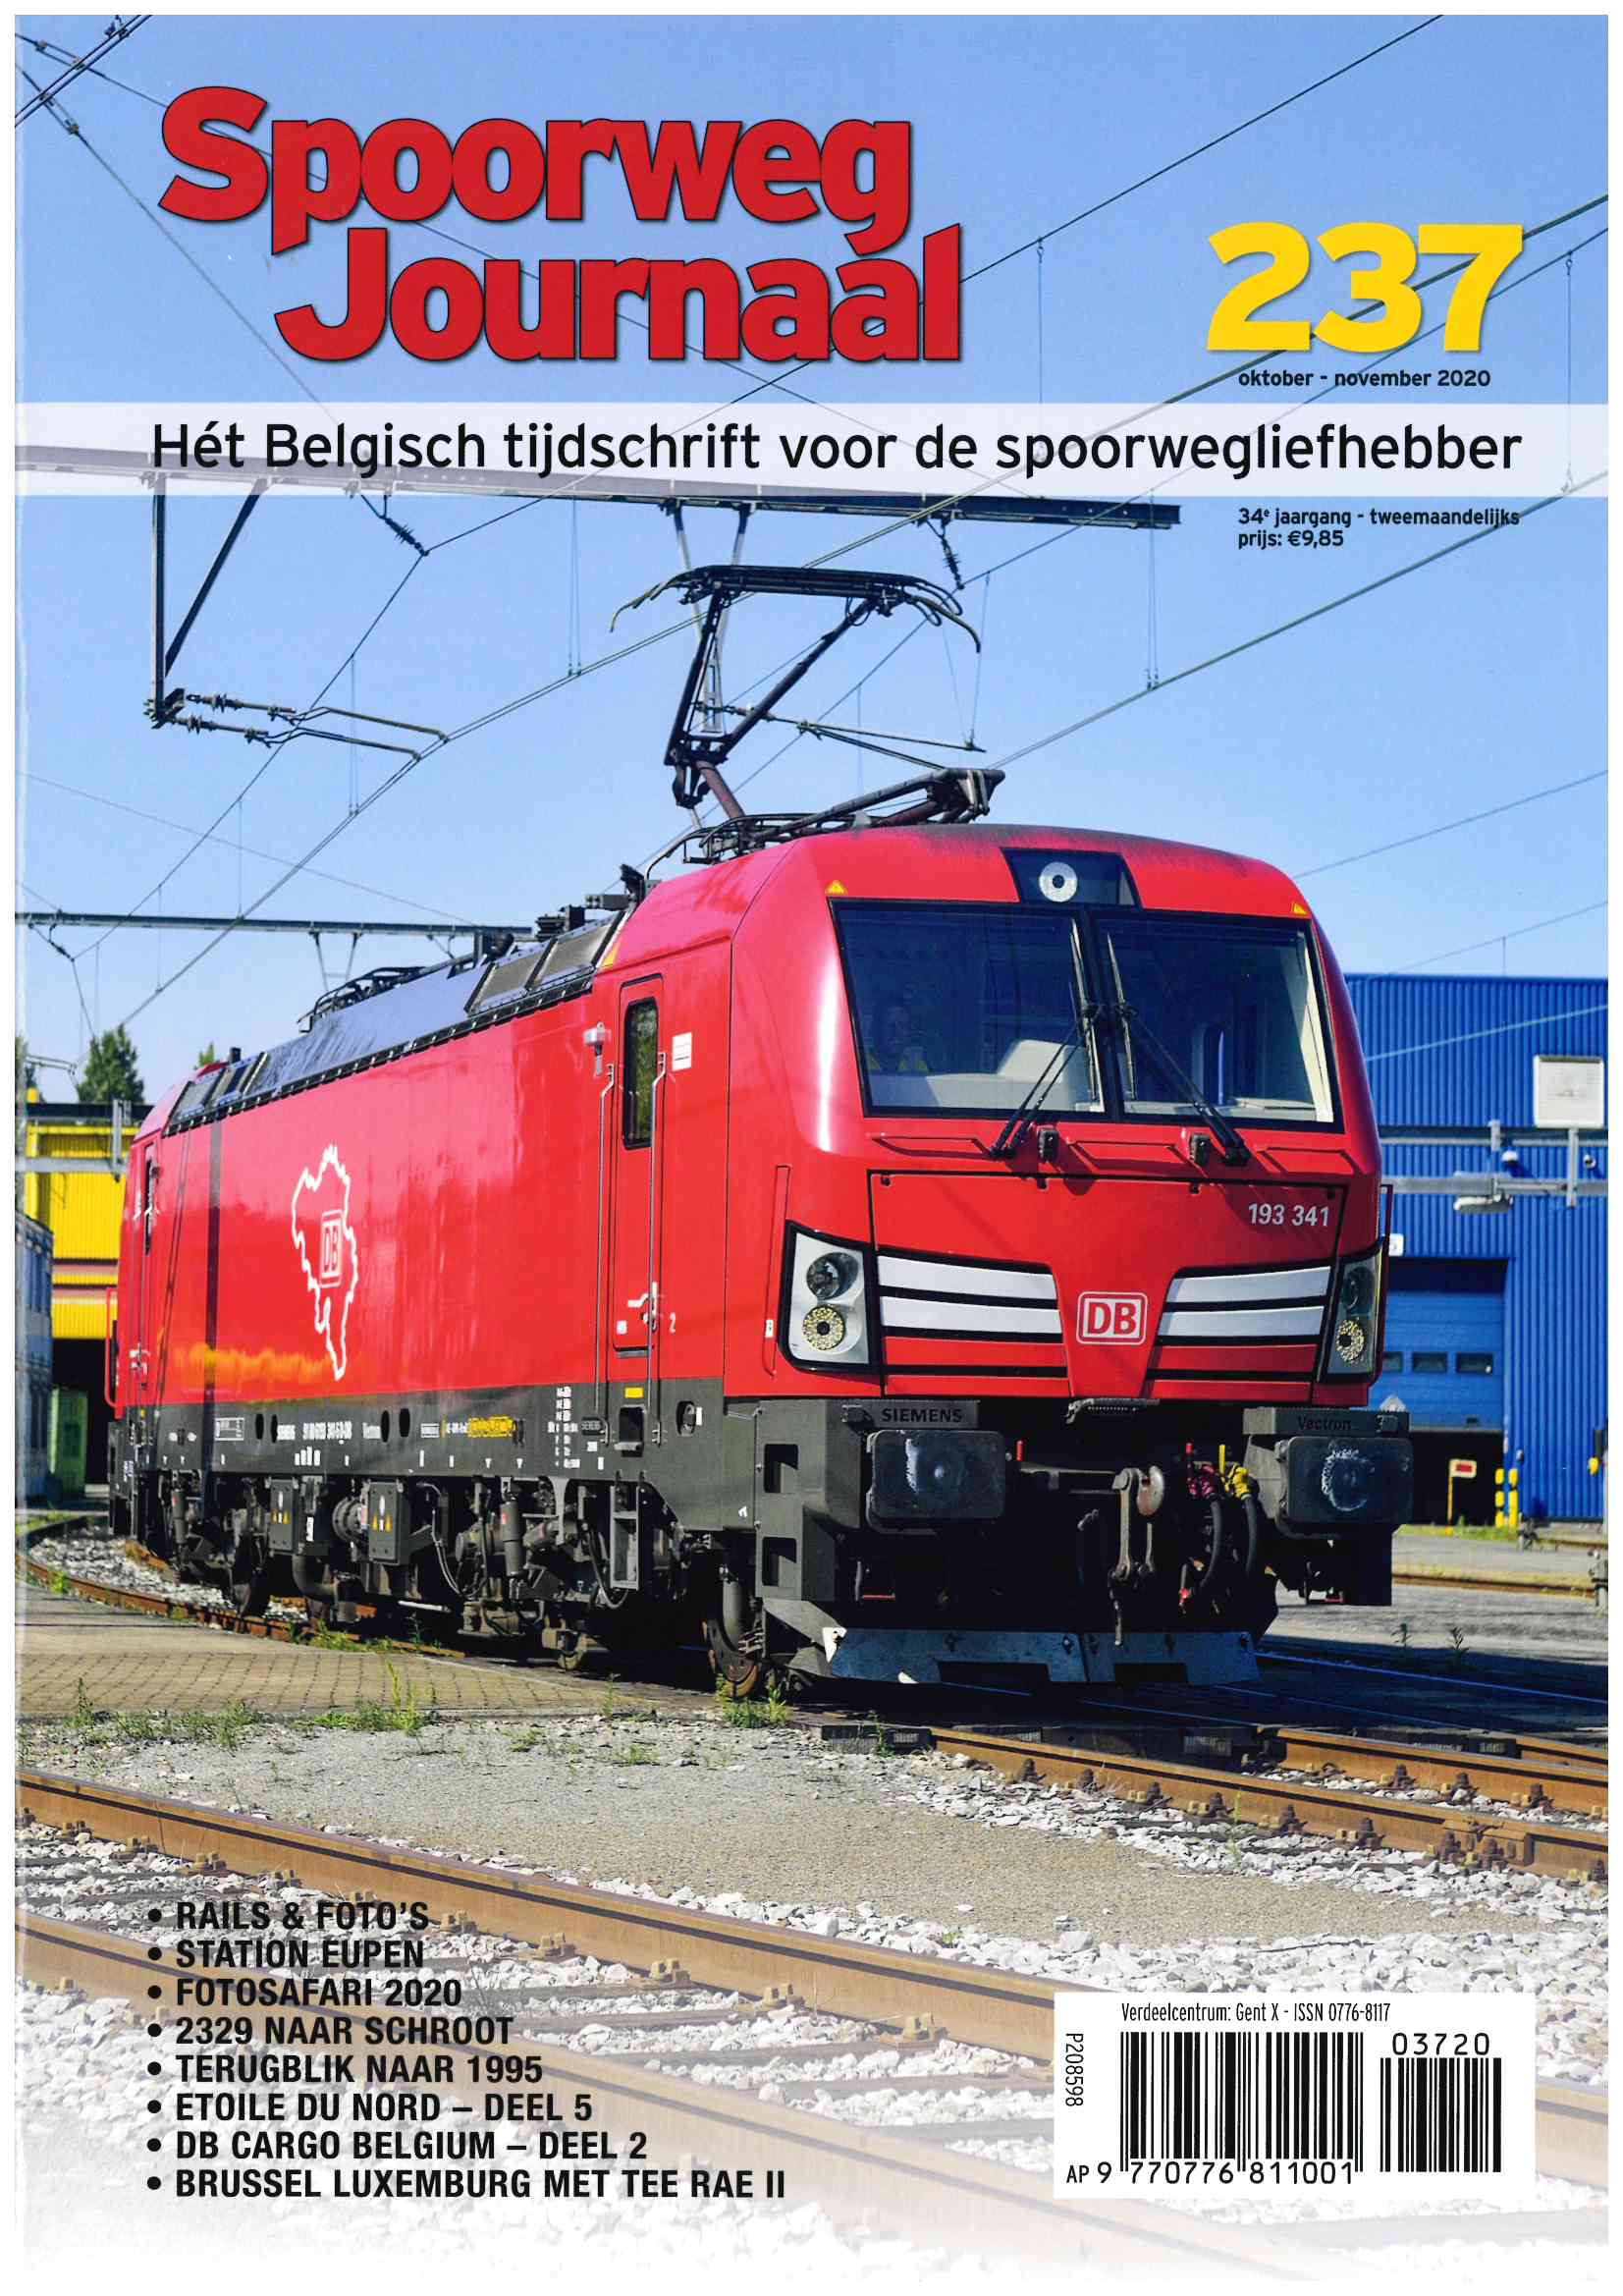 Spoorweg Journal 237 niederländische/flämische Ausgabe